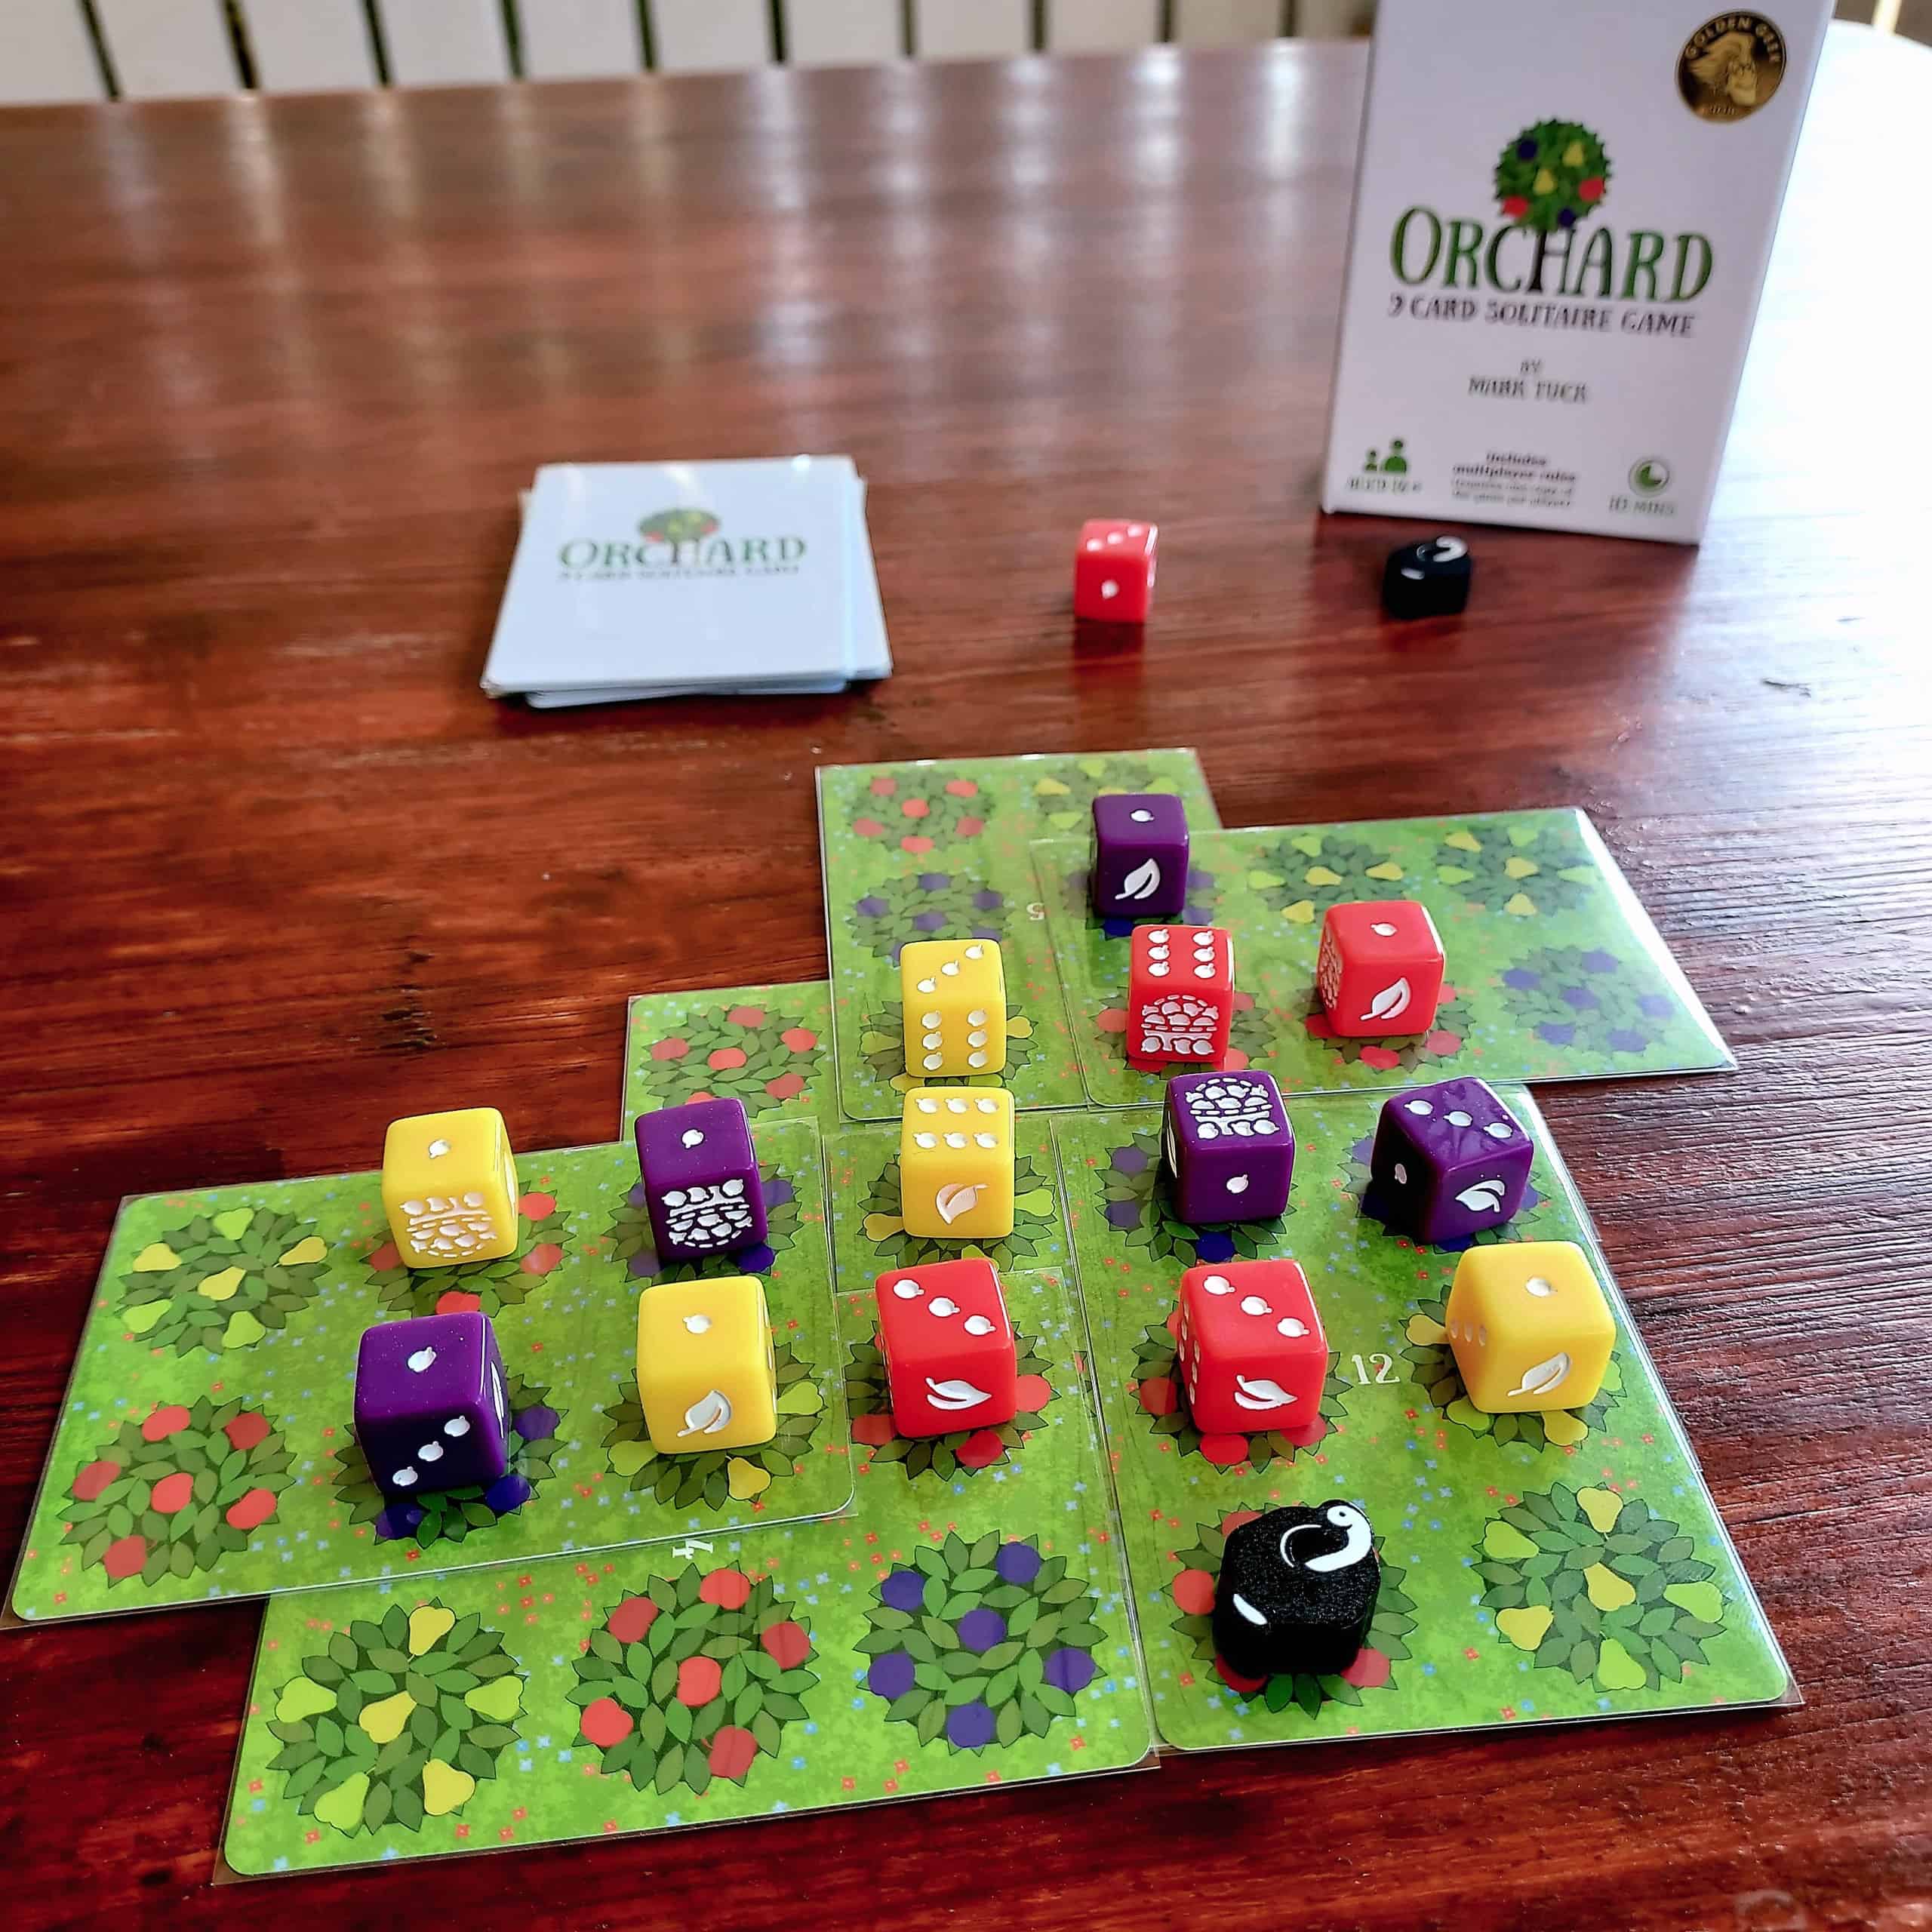 Orchard-peli pöydällä: vihreitä kortteja lomittain, niiden päällä värikkäitä noppia.